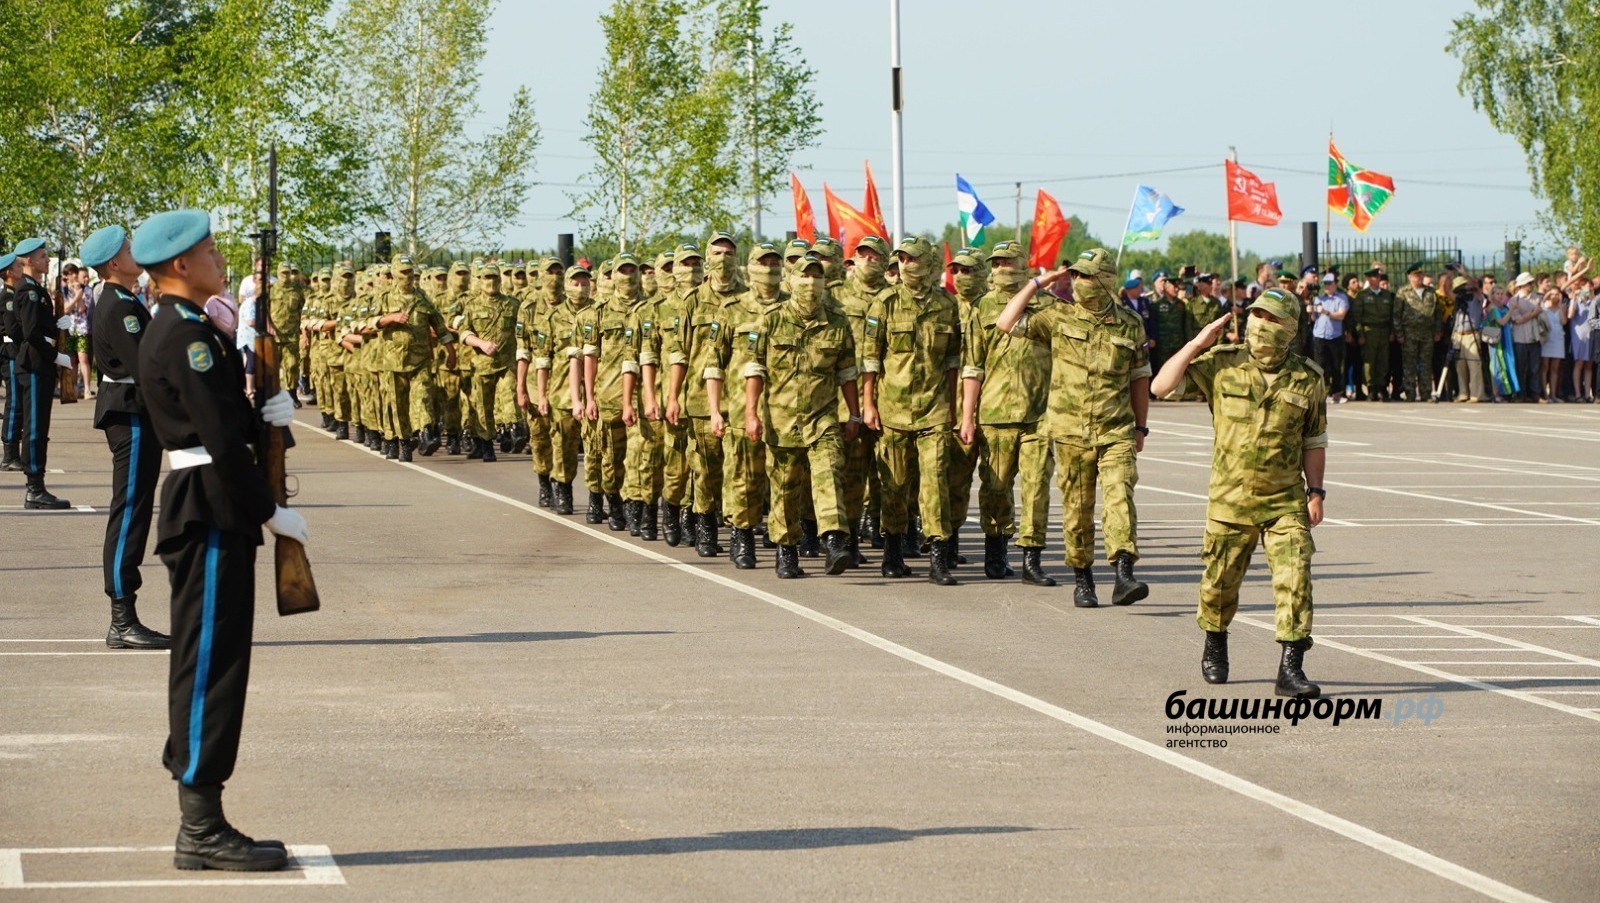 Донбасс, жди: второй добровольческий батальон из Башкирии направился на боевое слаживание